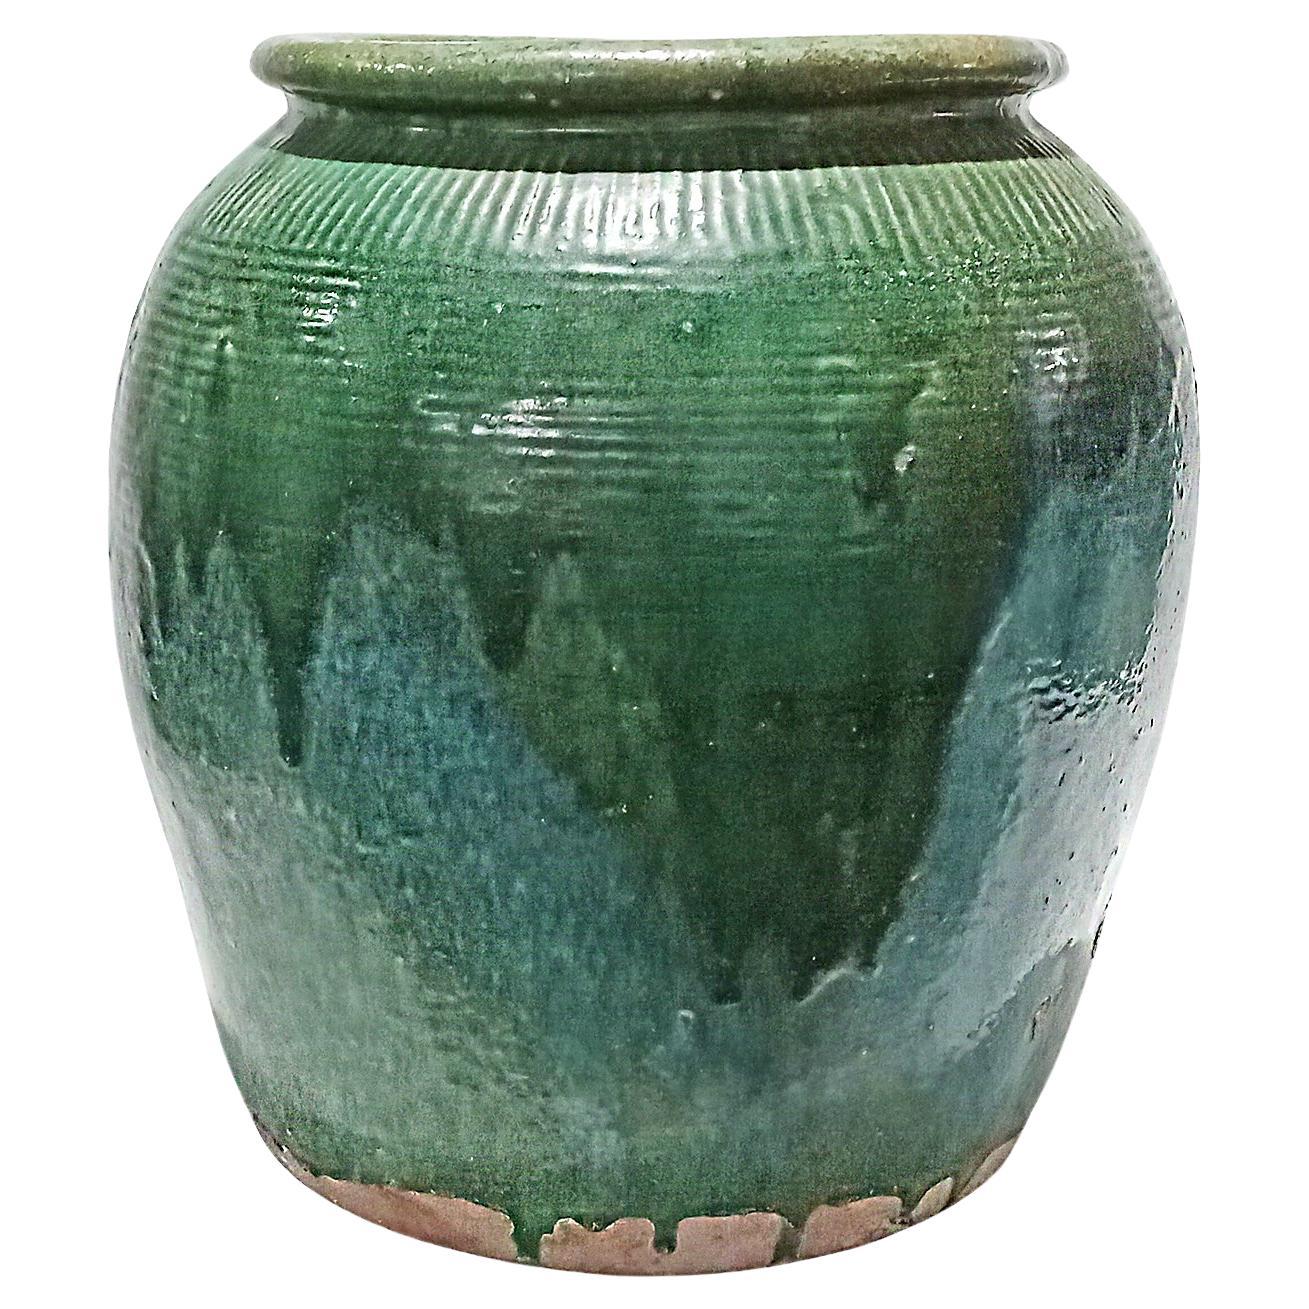 Balinesische Terrakotta Vase / JAR / Urne mit grüner Glasur, Contemporary